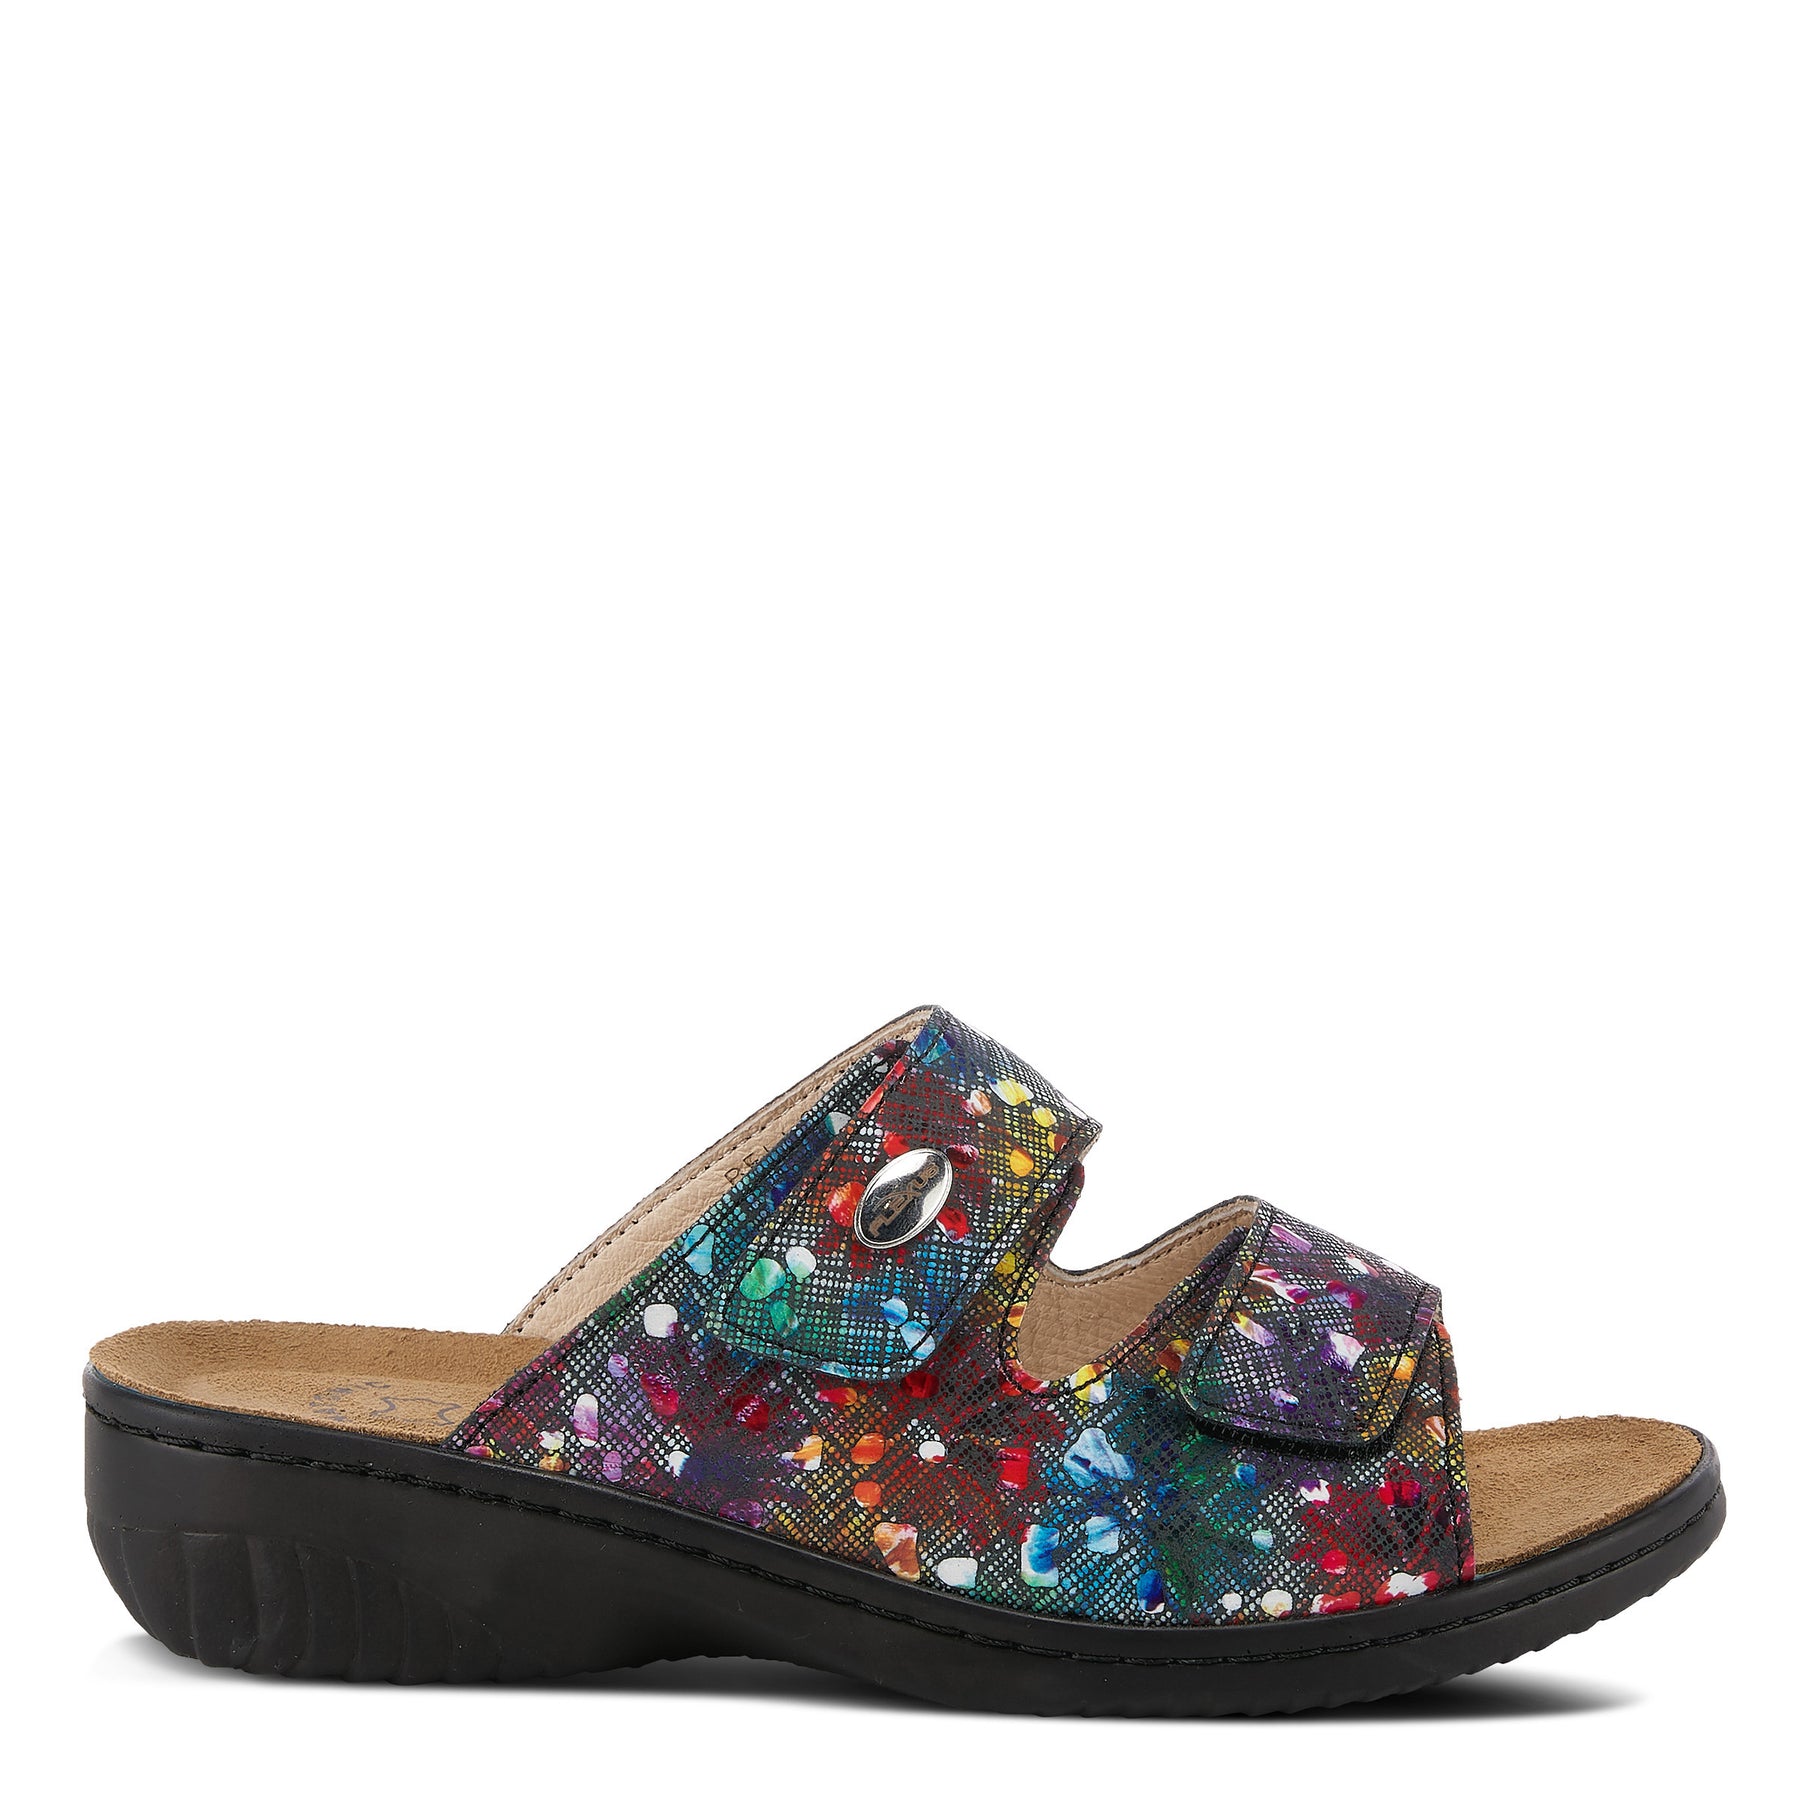 Flexus Bellasa Slide Sandal: Leather Sandals– Spring Step Shoes